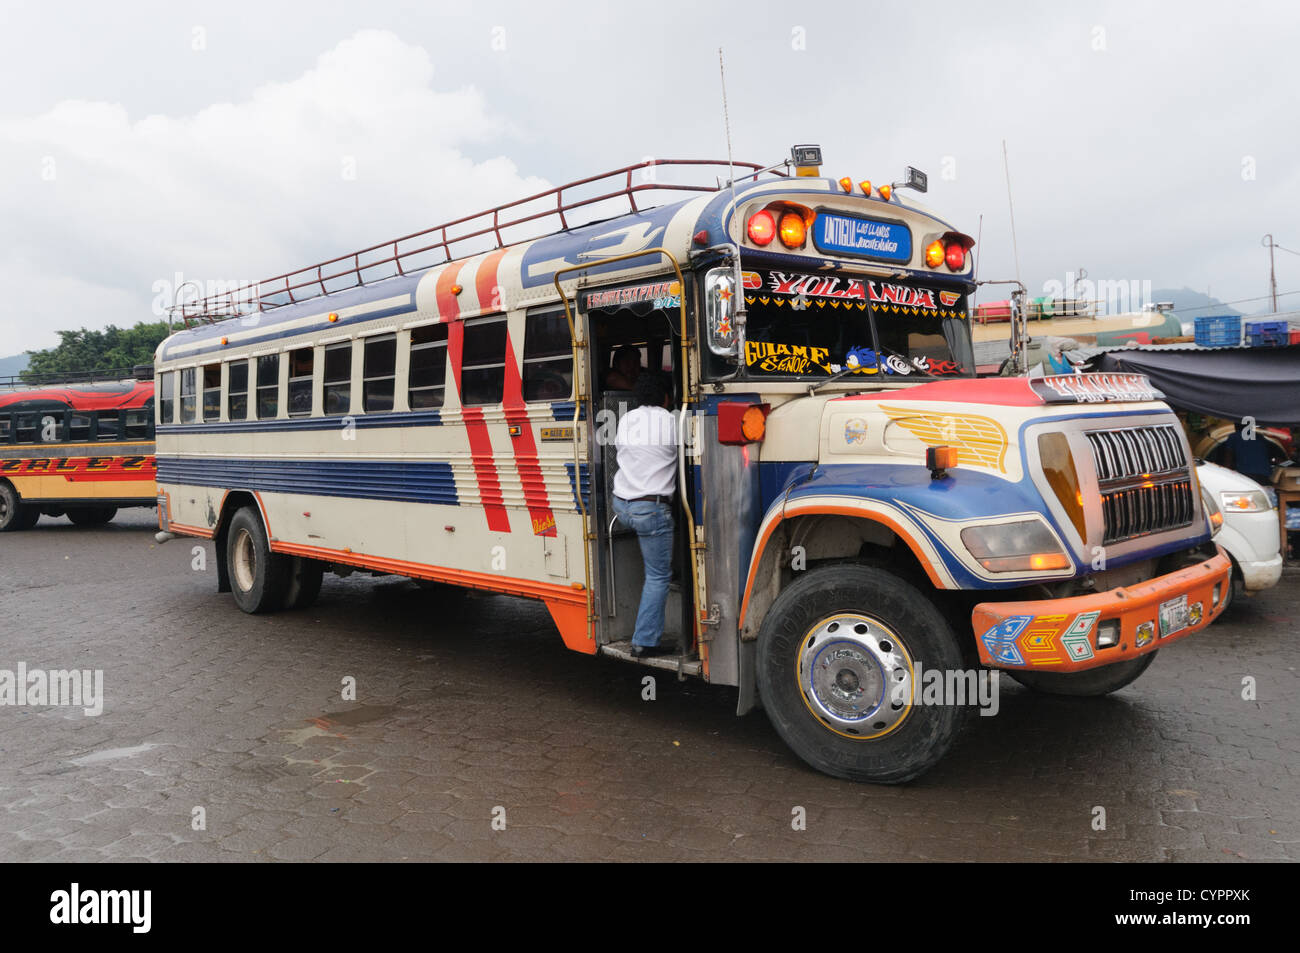 Reiten Sie Huhn Busse hinter dem Mercado Municipal (Stadtmarkt) in Antigua, Guatemala. Aus diesem umfangreichen zentralen Busbahnhof strahlenförmig der Routen in Guatemala. Oft bunt bemalt, die Huhn-Busse sind nachgerüsteten amerikanische Schulbusse und bieten ein günstiges Transportmittel im ganzen Land. Stockfoto